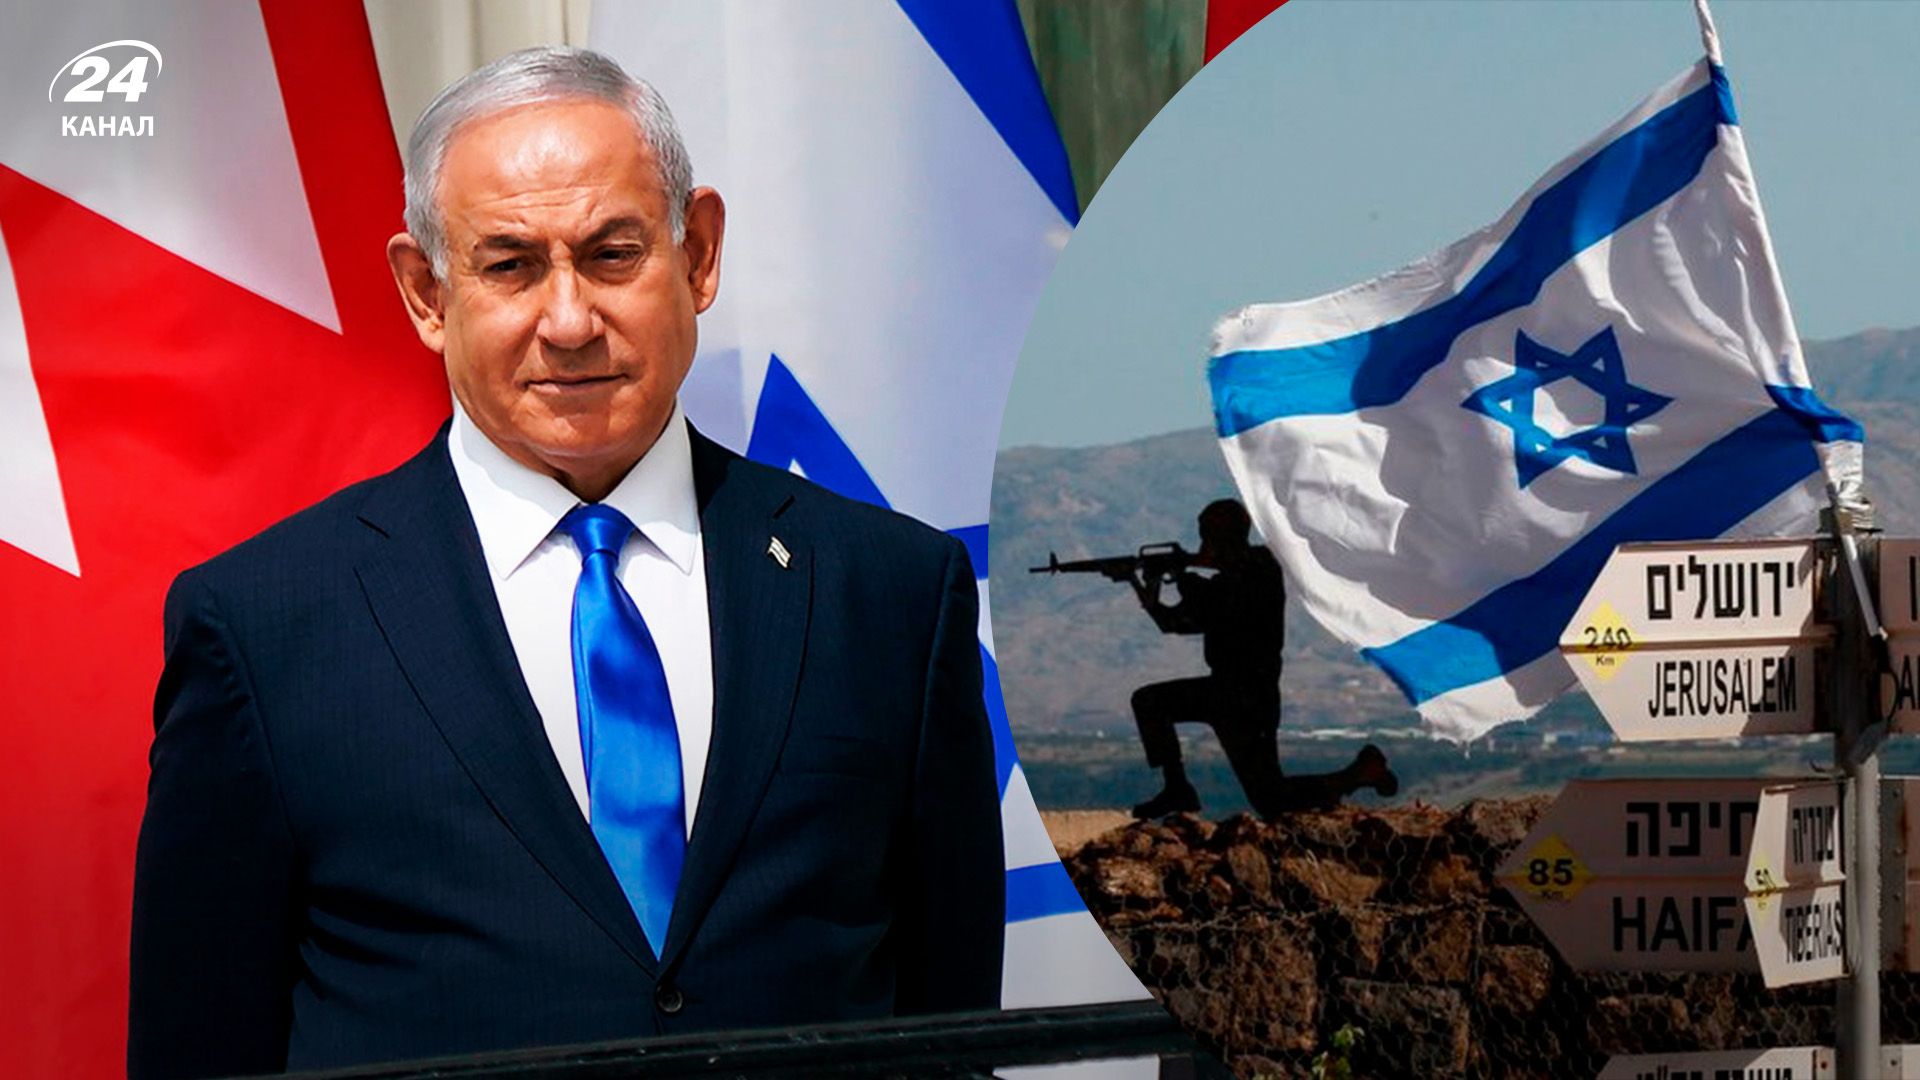 Нетаньяху може повернутися до влади в Ізраїлі: як це вплине на допомогу Україні